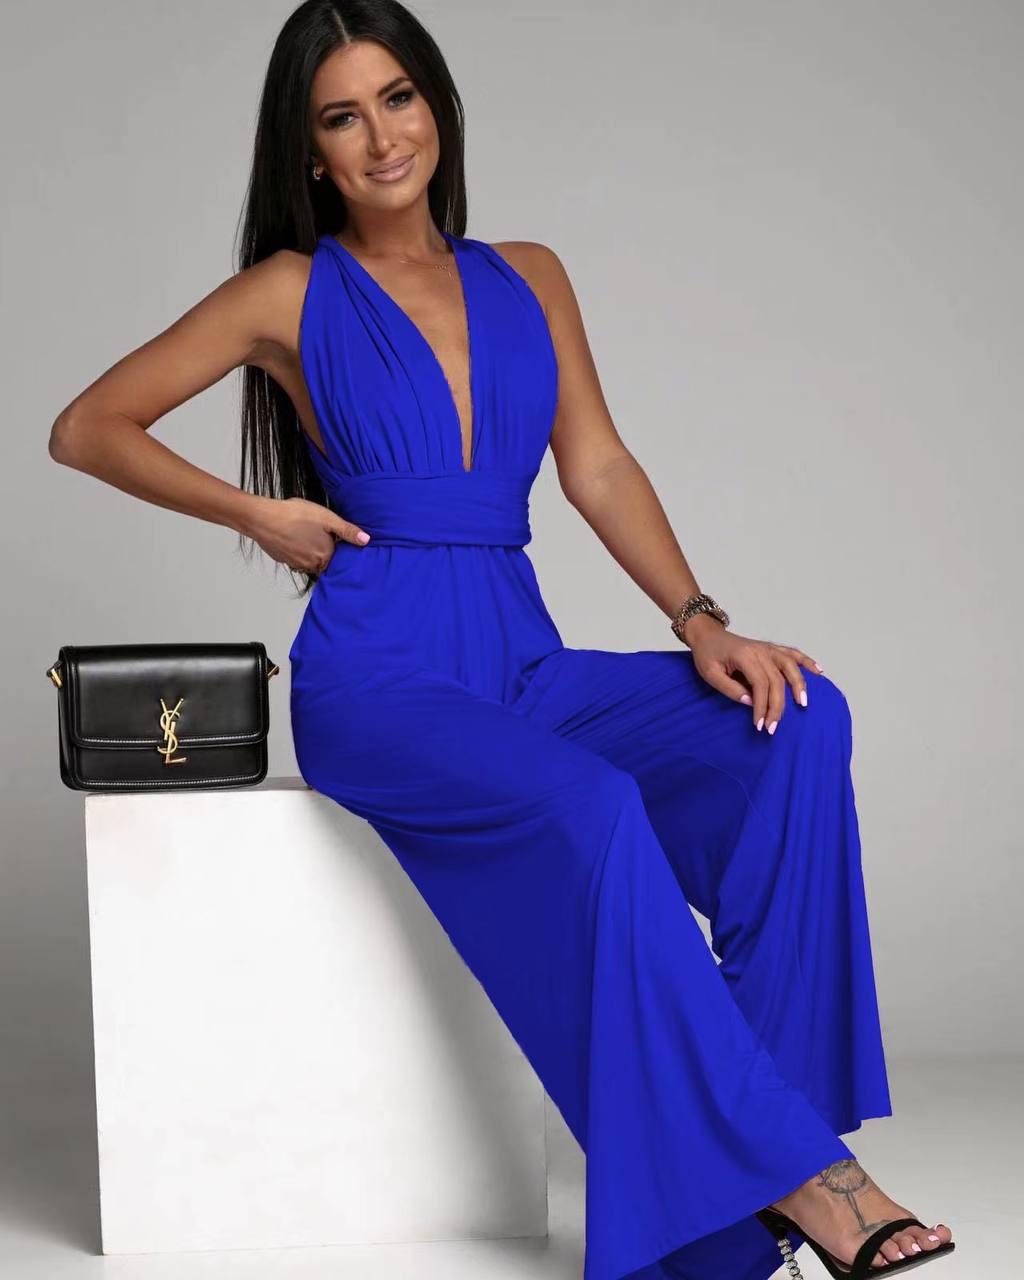 Γυναικεία εντυπωσιακή ολόσωμη φόρμα 4538 μπλε